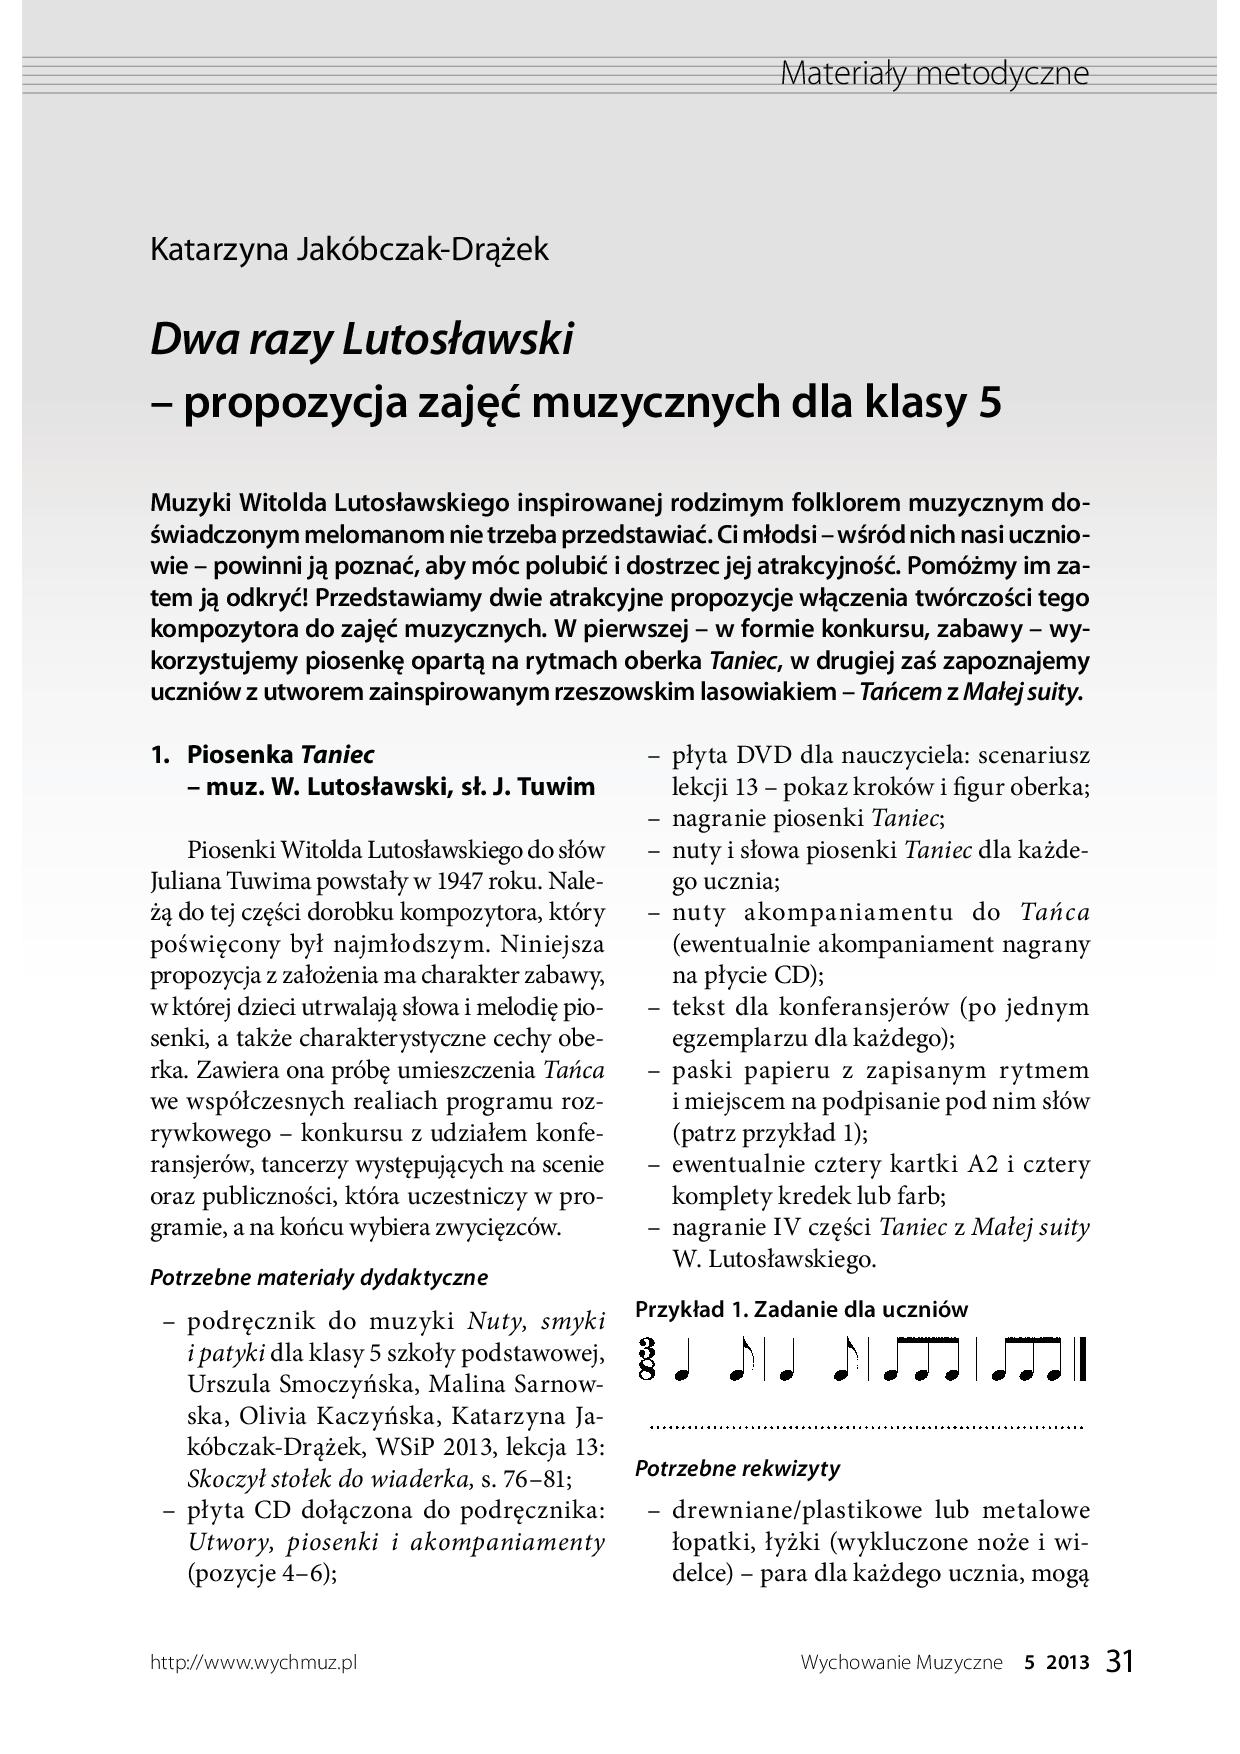 Dwa razy Lutosławski – propozycja zajęć muzycznych dla klasy 5 